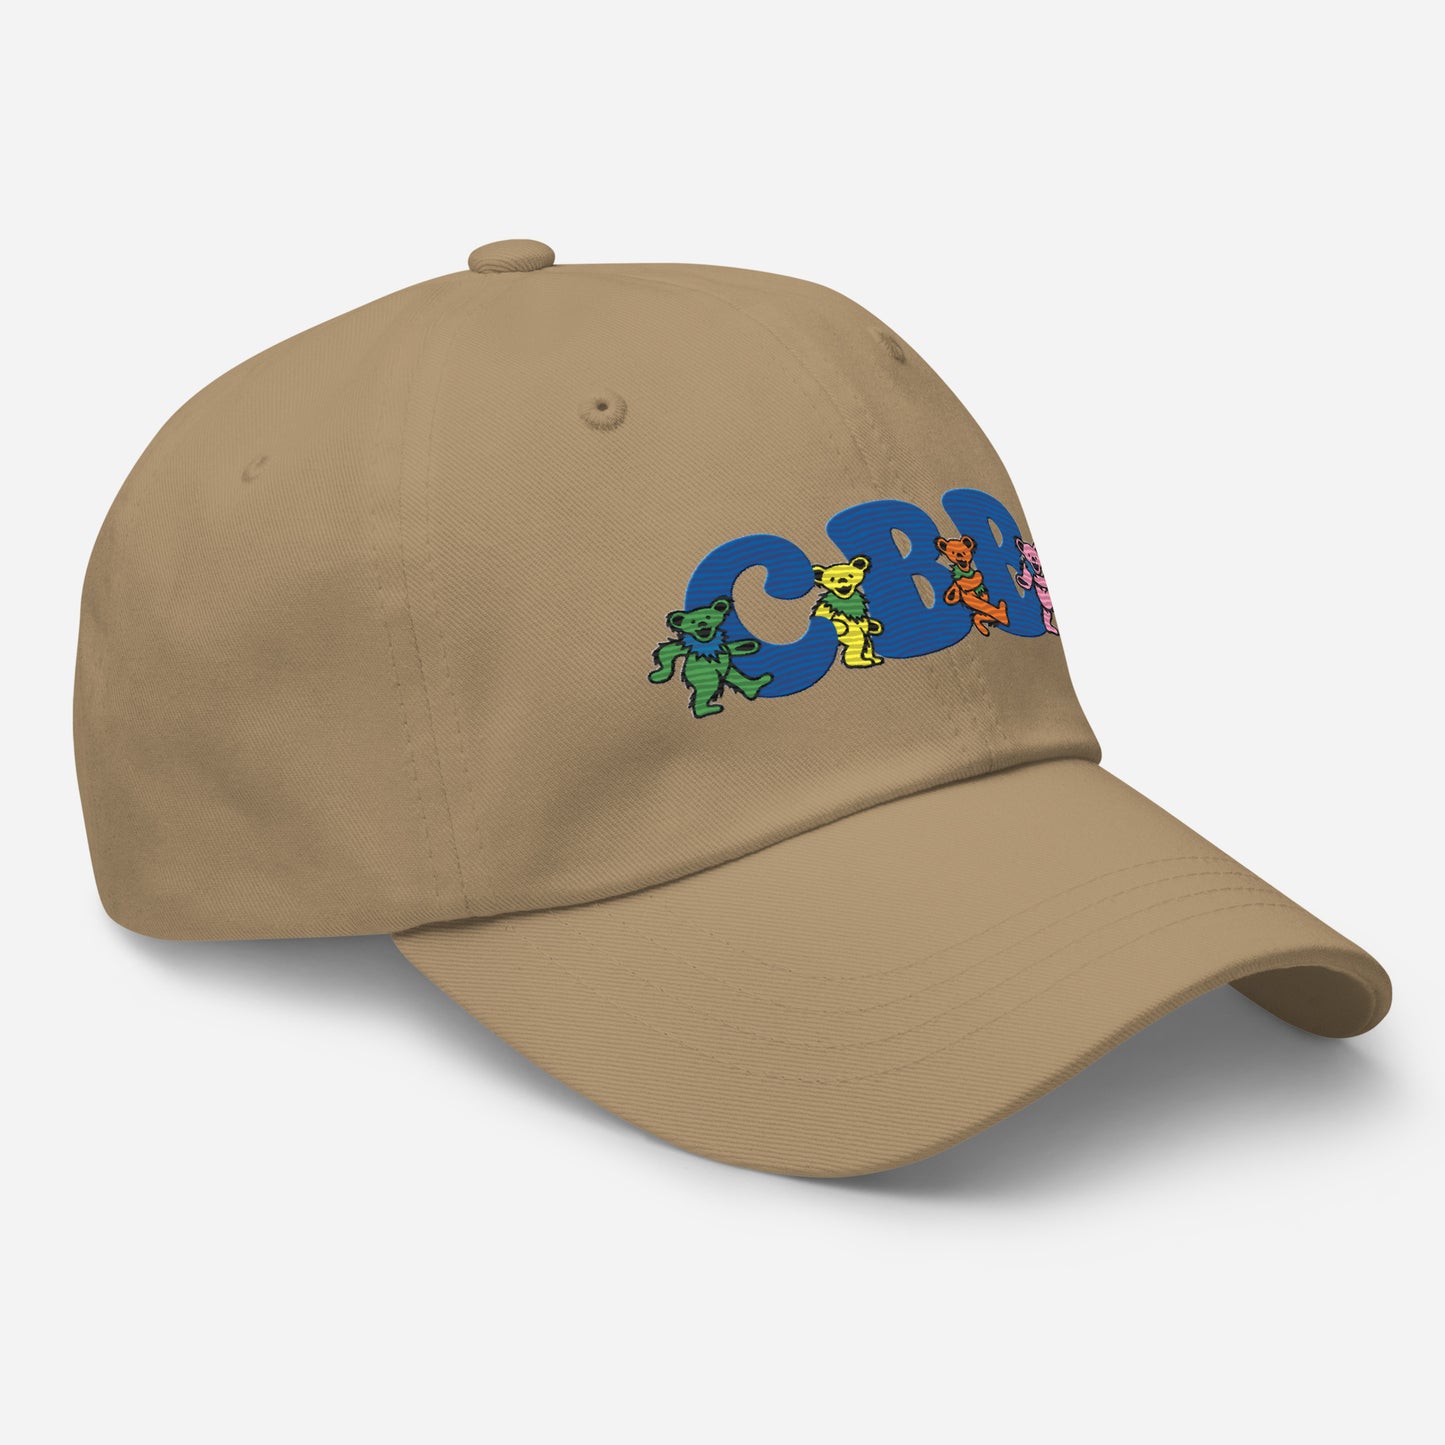 CBB Grateful Dead Dad hat